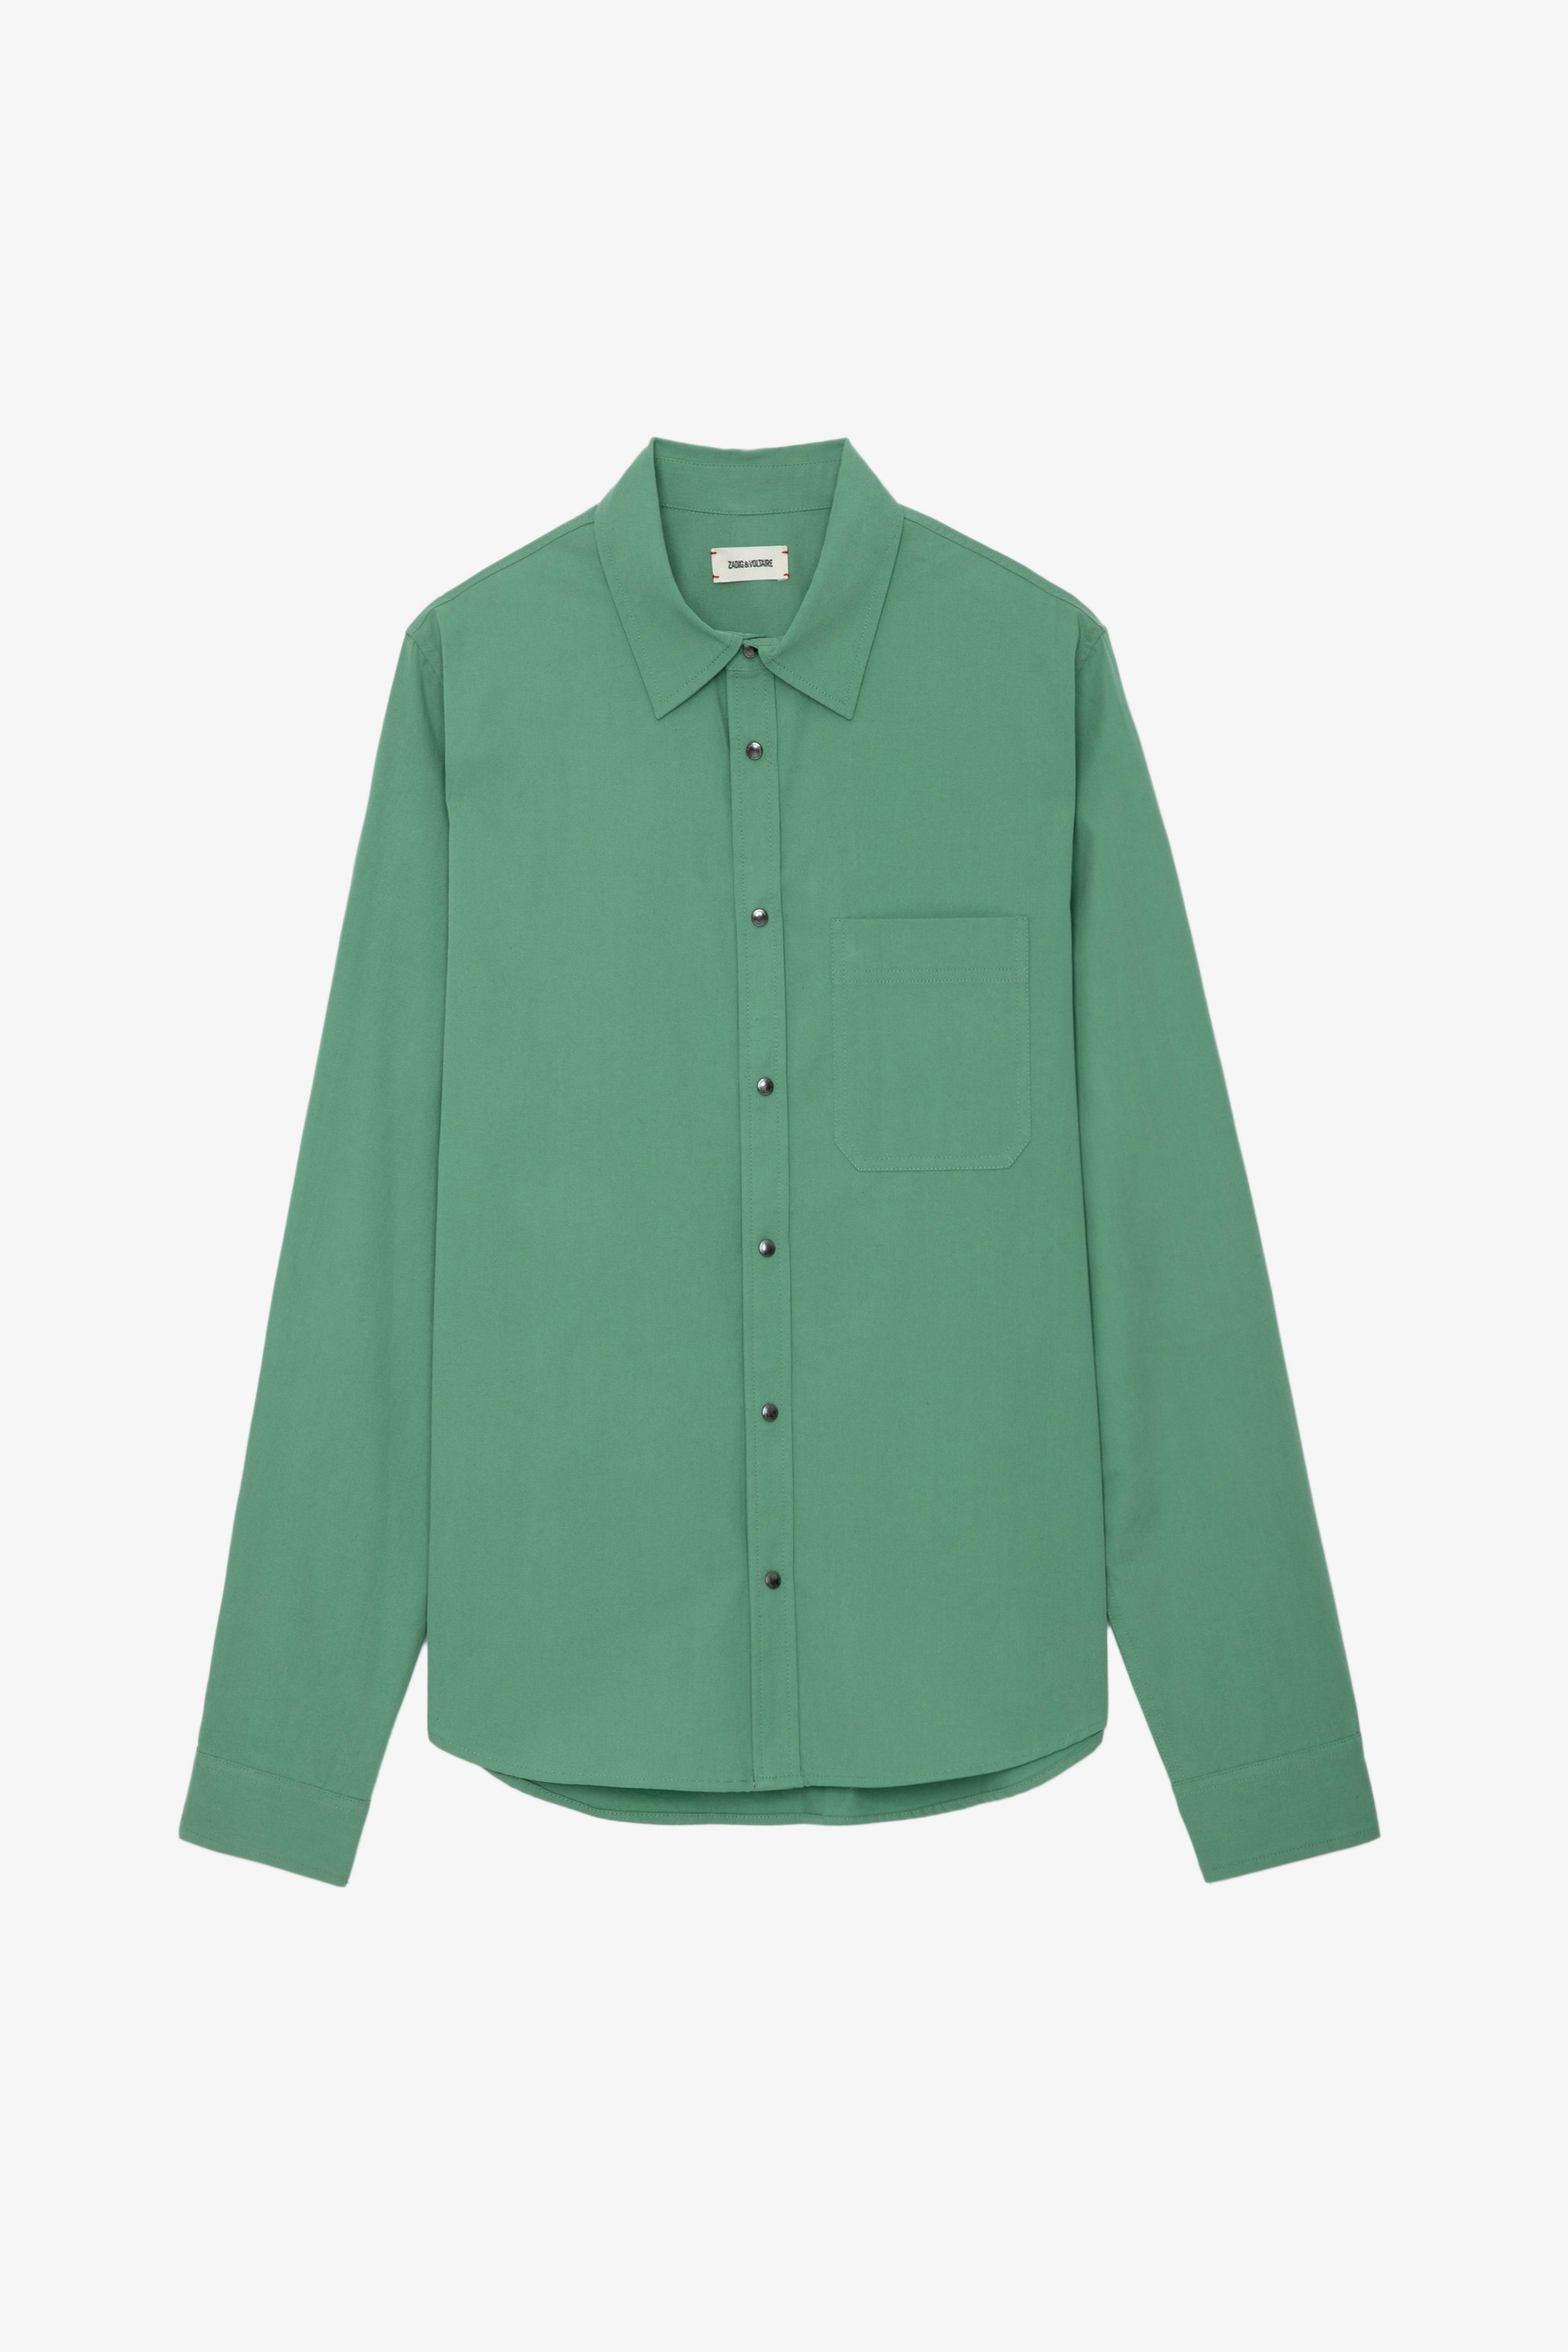 Hemd Stan - Grünes Hemd aus Baumwolltwill mit aufgesetzter Tasche und Verzierungen auf dem Rücken von Humberto Cruz.